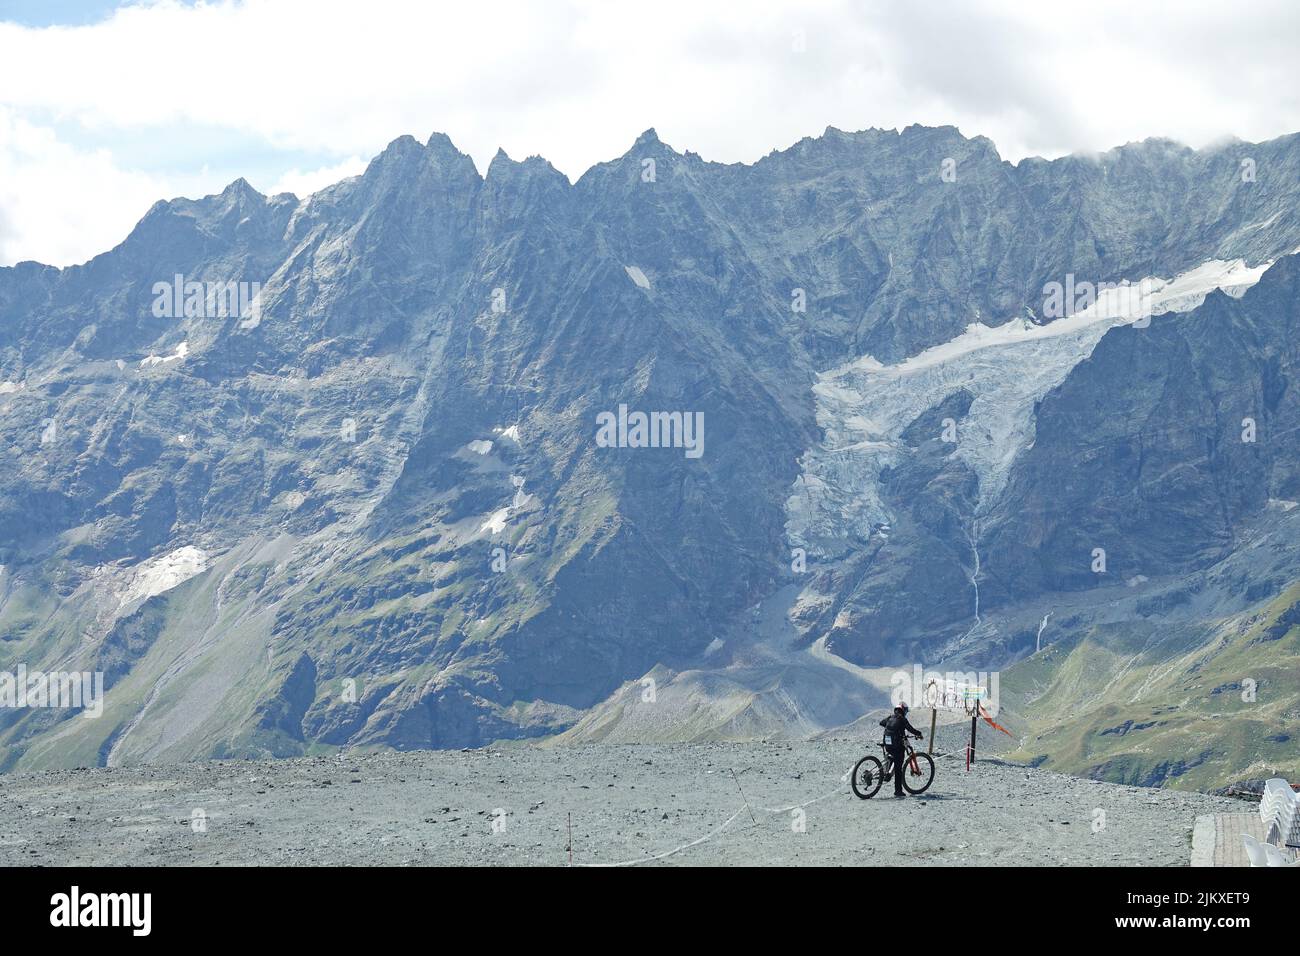 Der Bikepark Matterhorn Valley ist der höchste Europas und bietet Pisten aller Schwierigkeitsgrade. Breuil-Cervinia, Italien - August 2022 Stockfoto